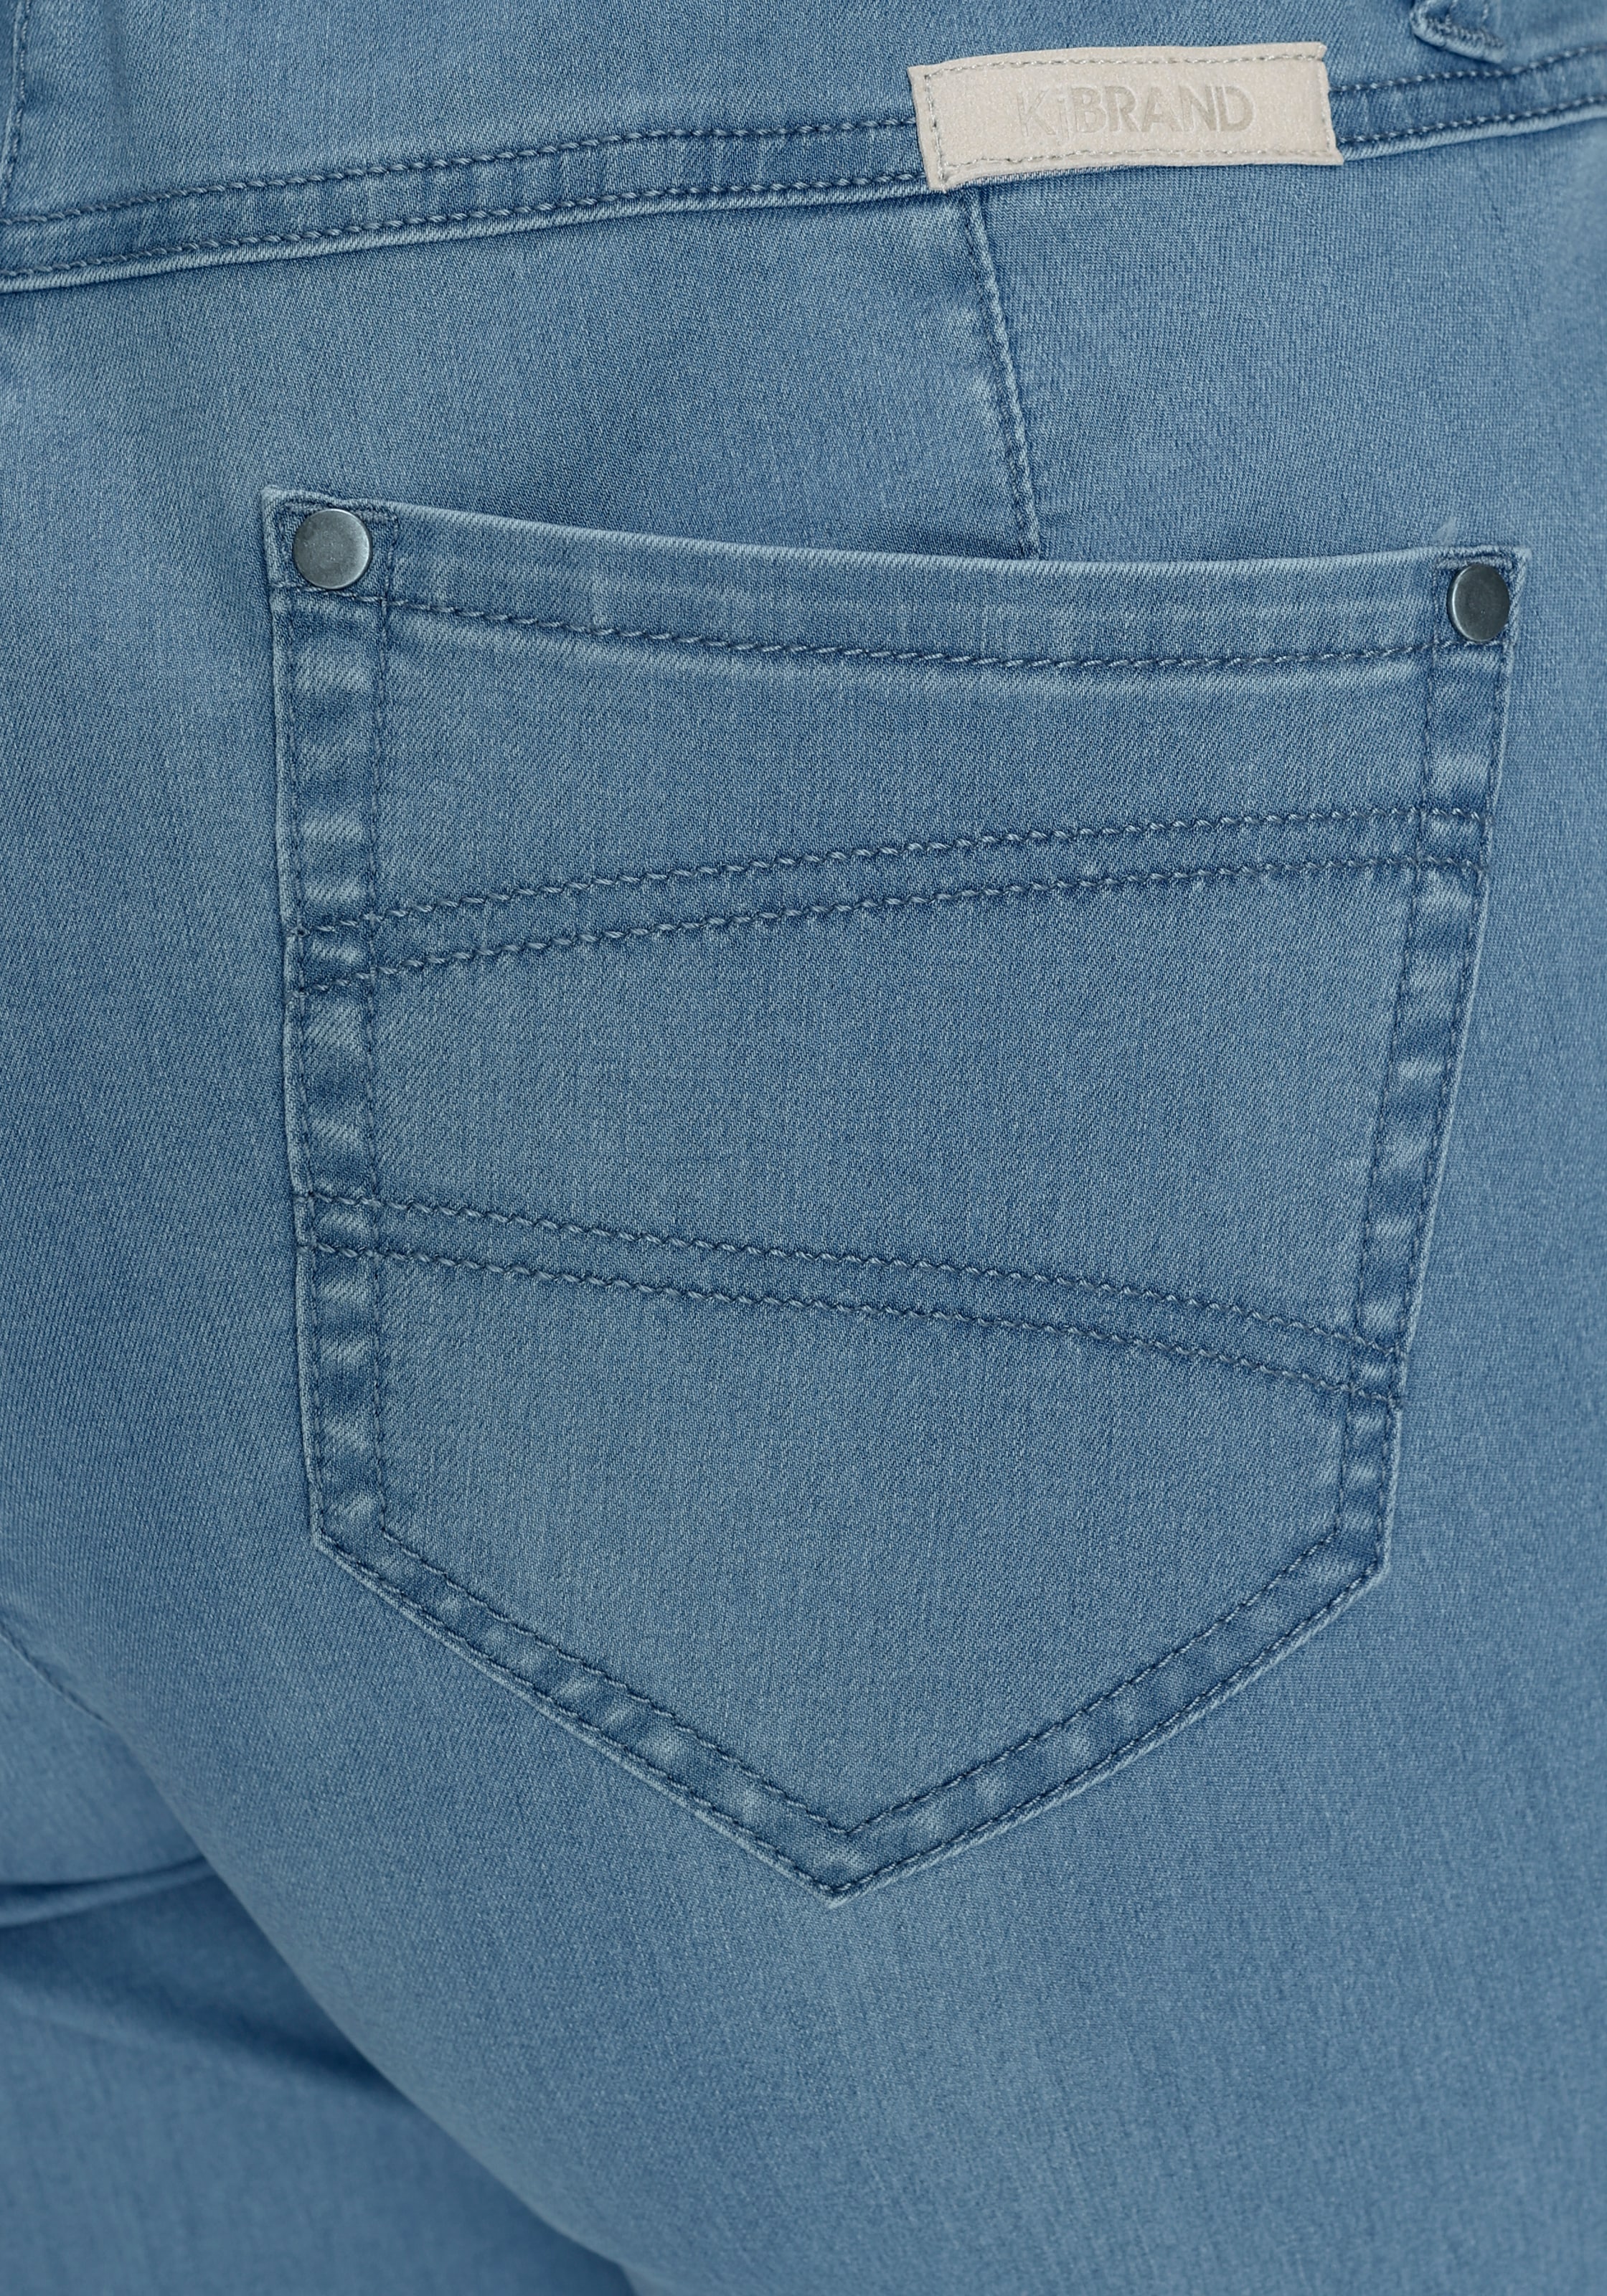 ♕ KjBRAND Straight-Jeans versandkostenfrei »Babsie« kaufen